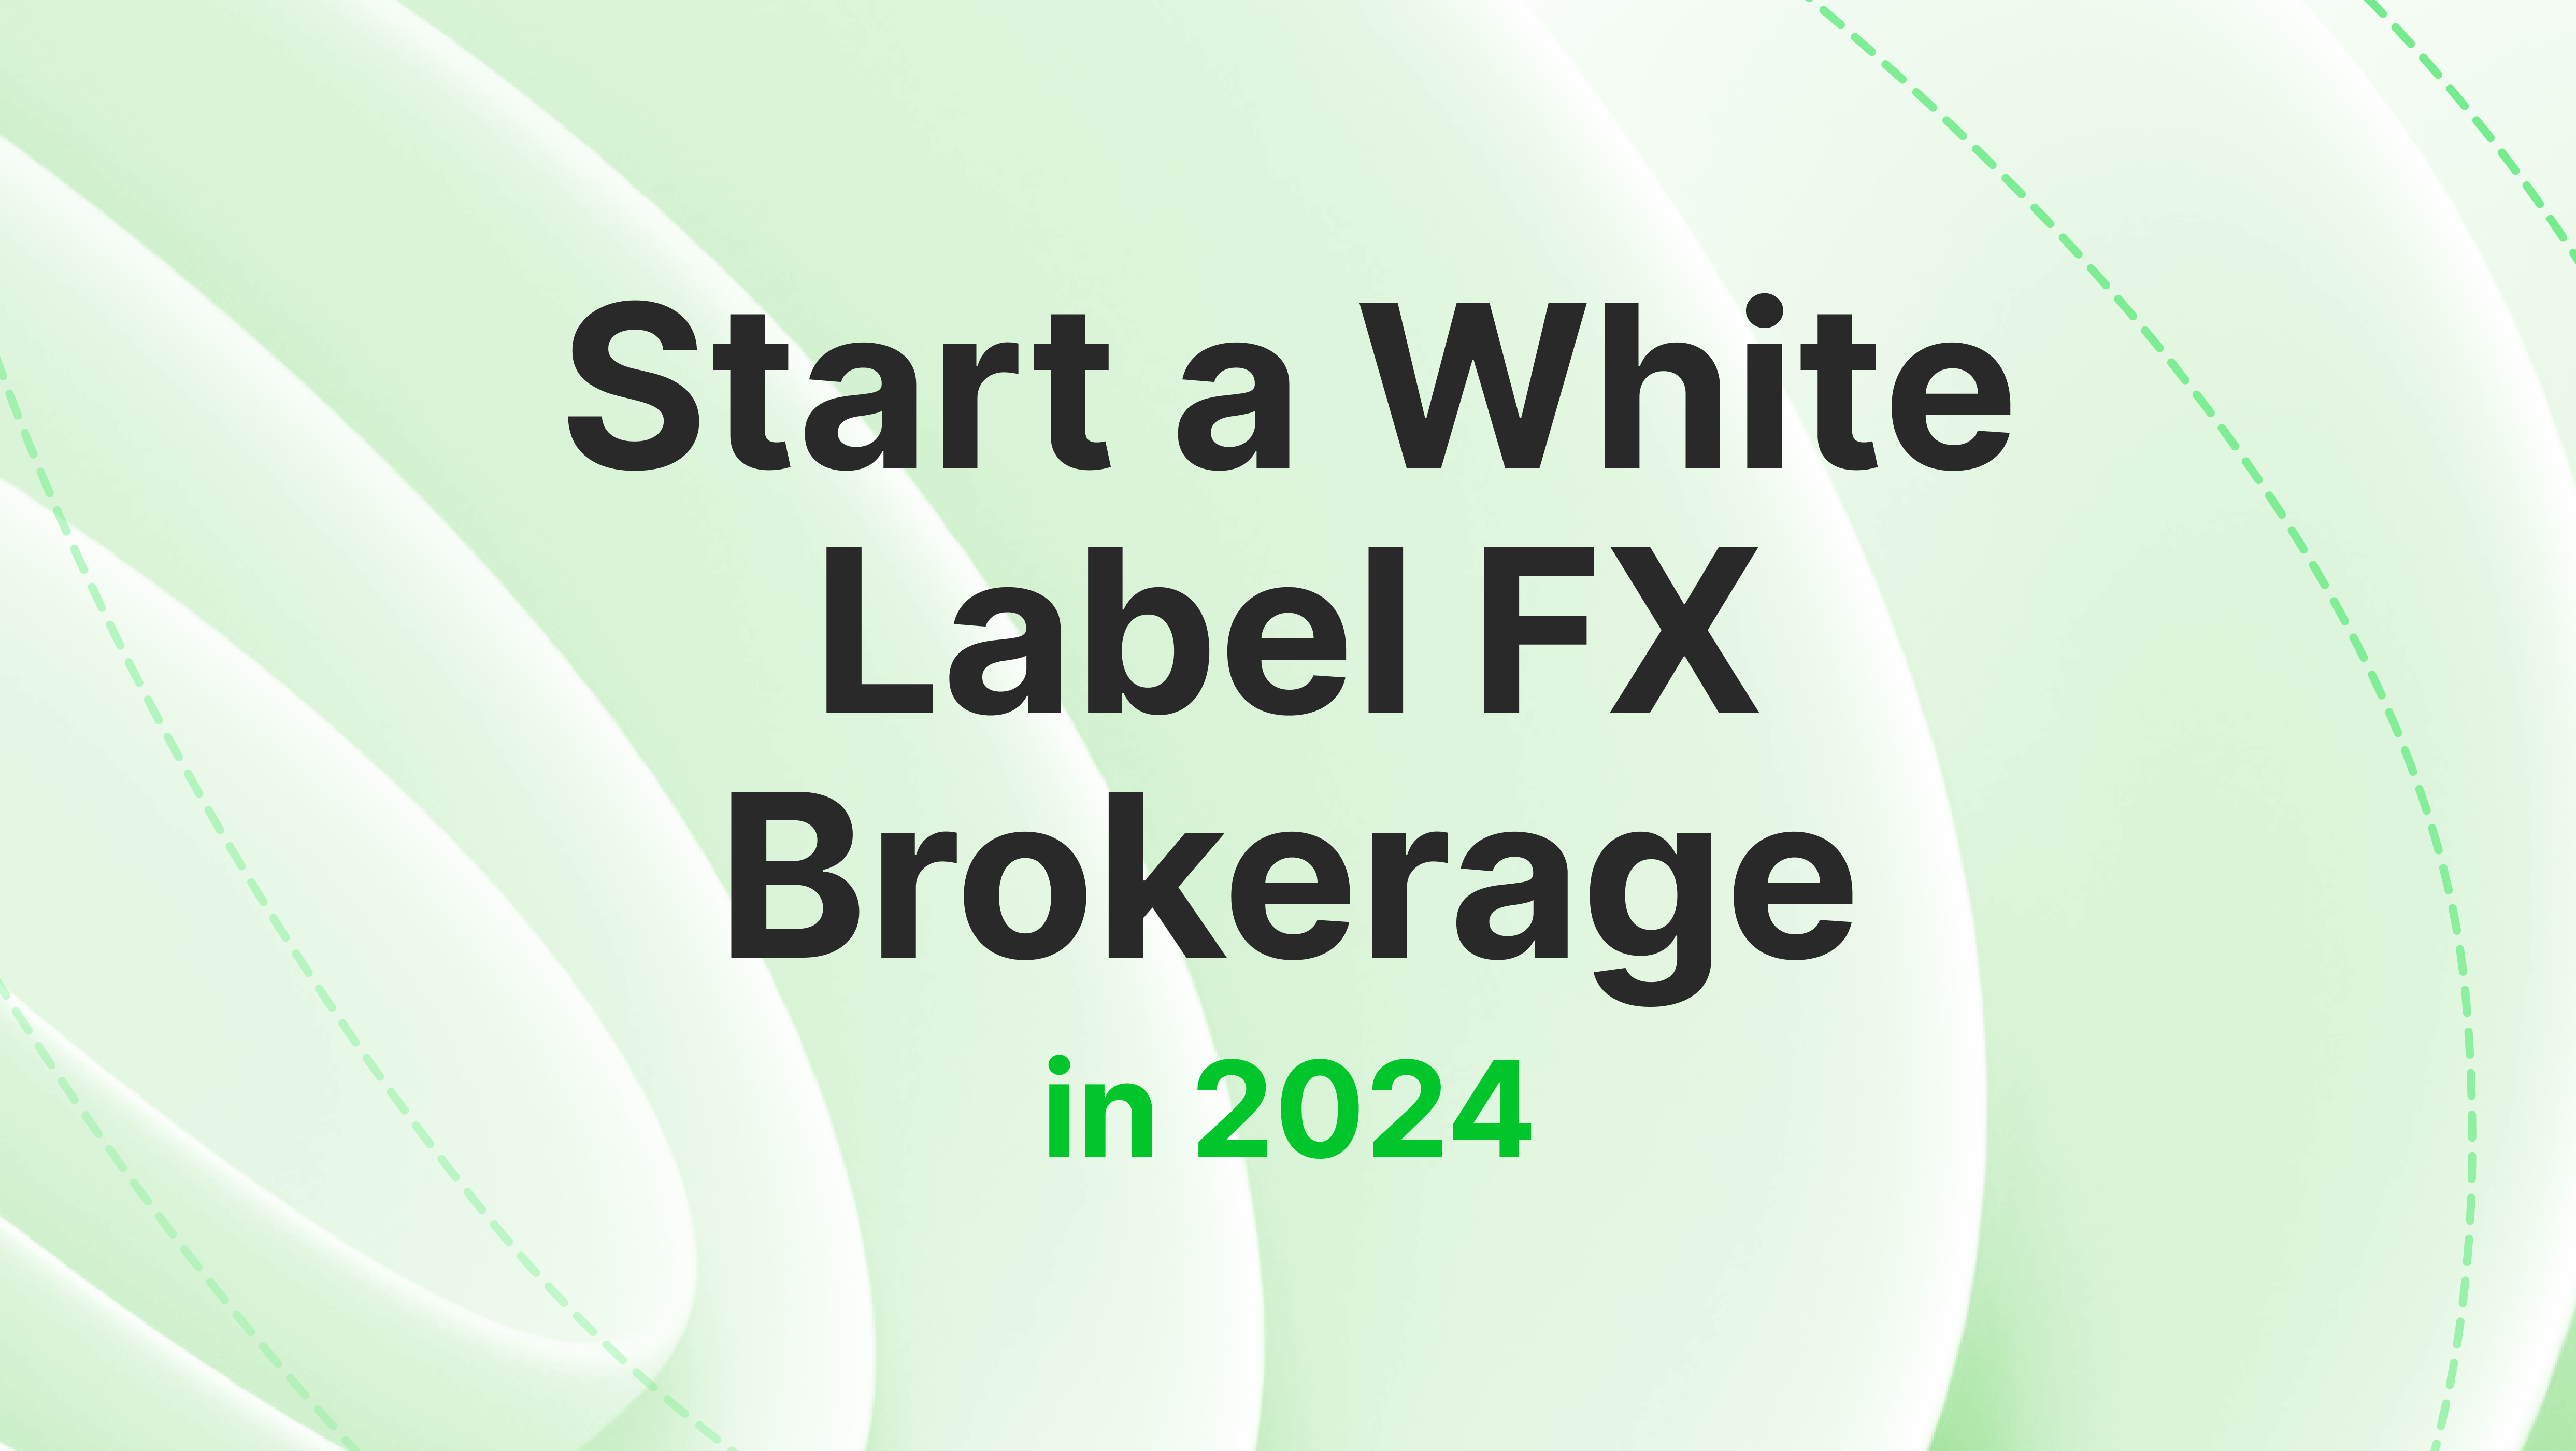 Start a White Label FX Brokerage in 2024